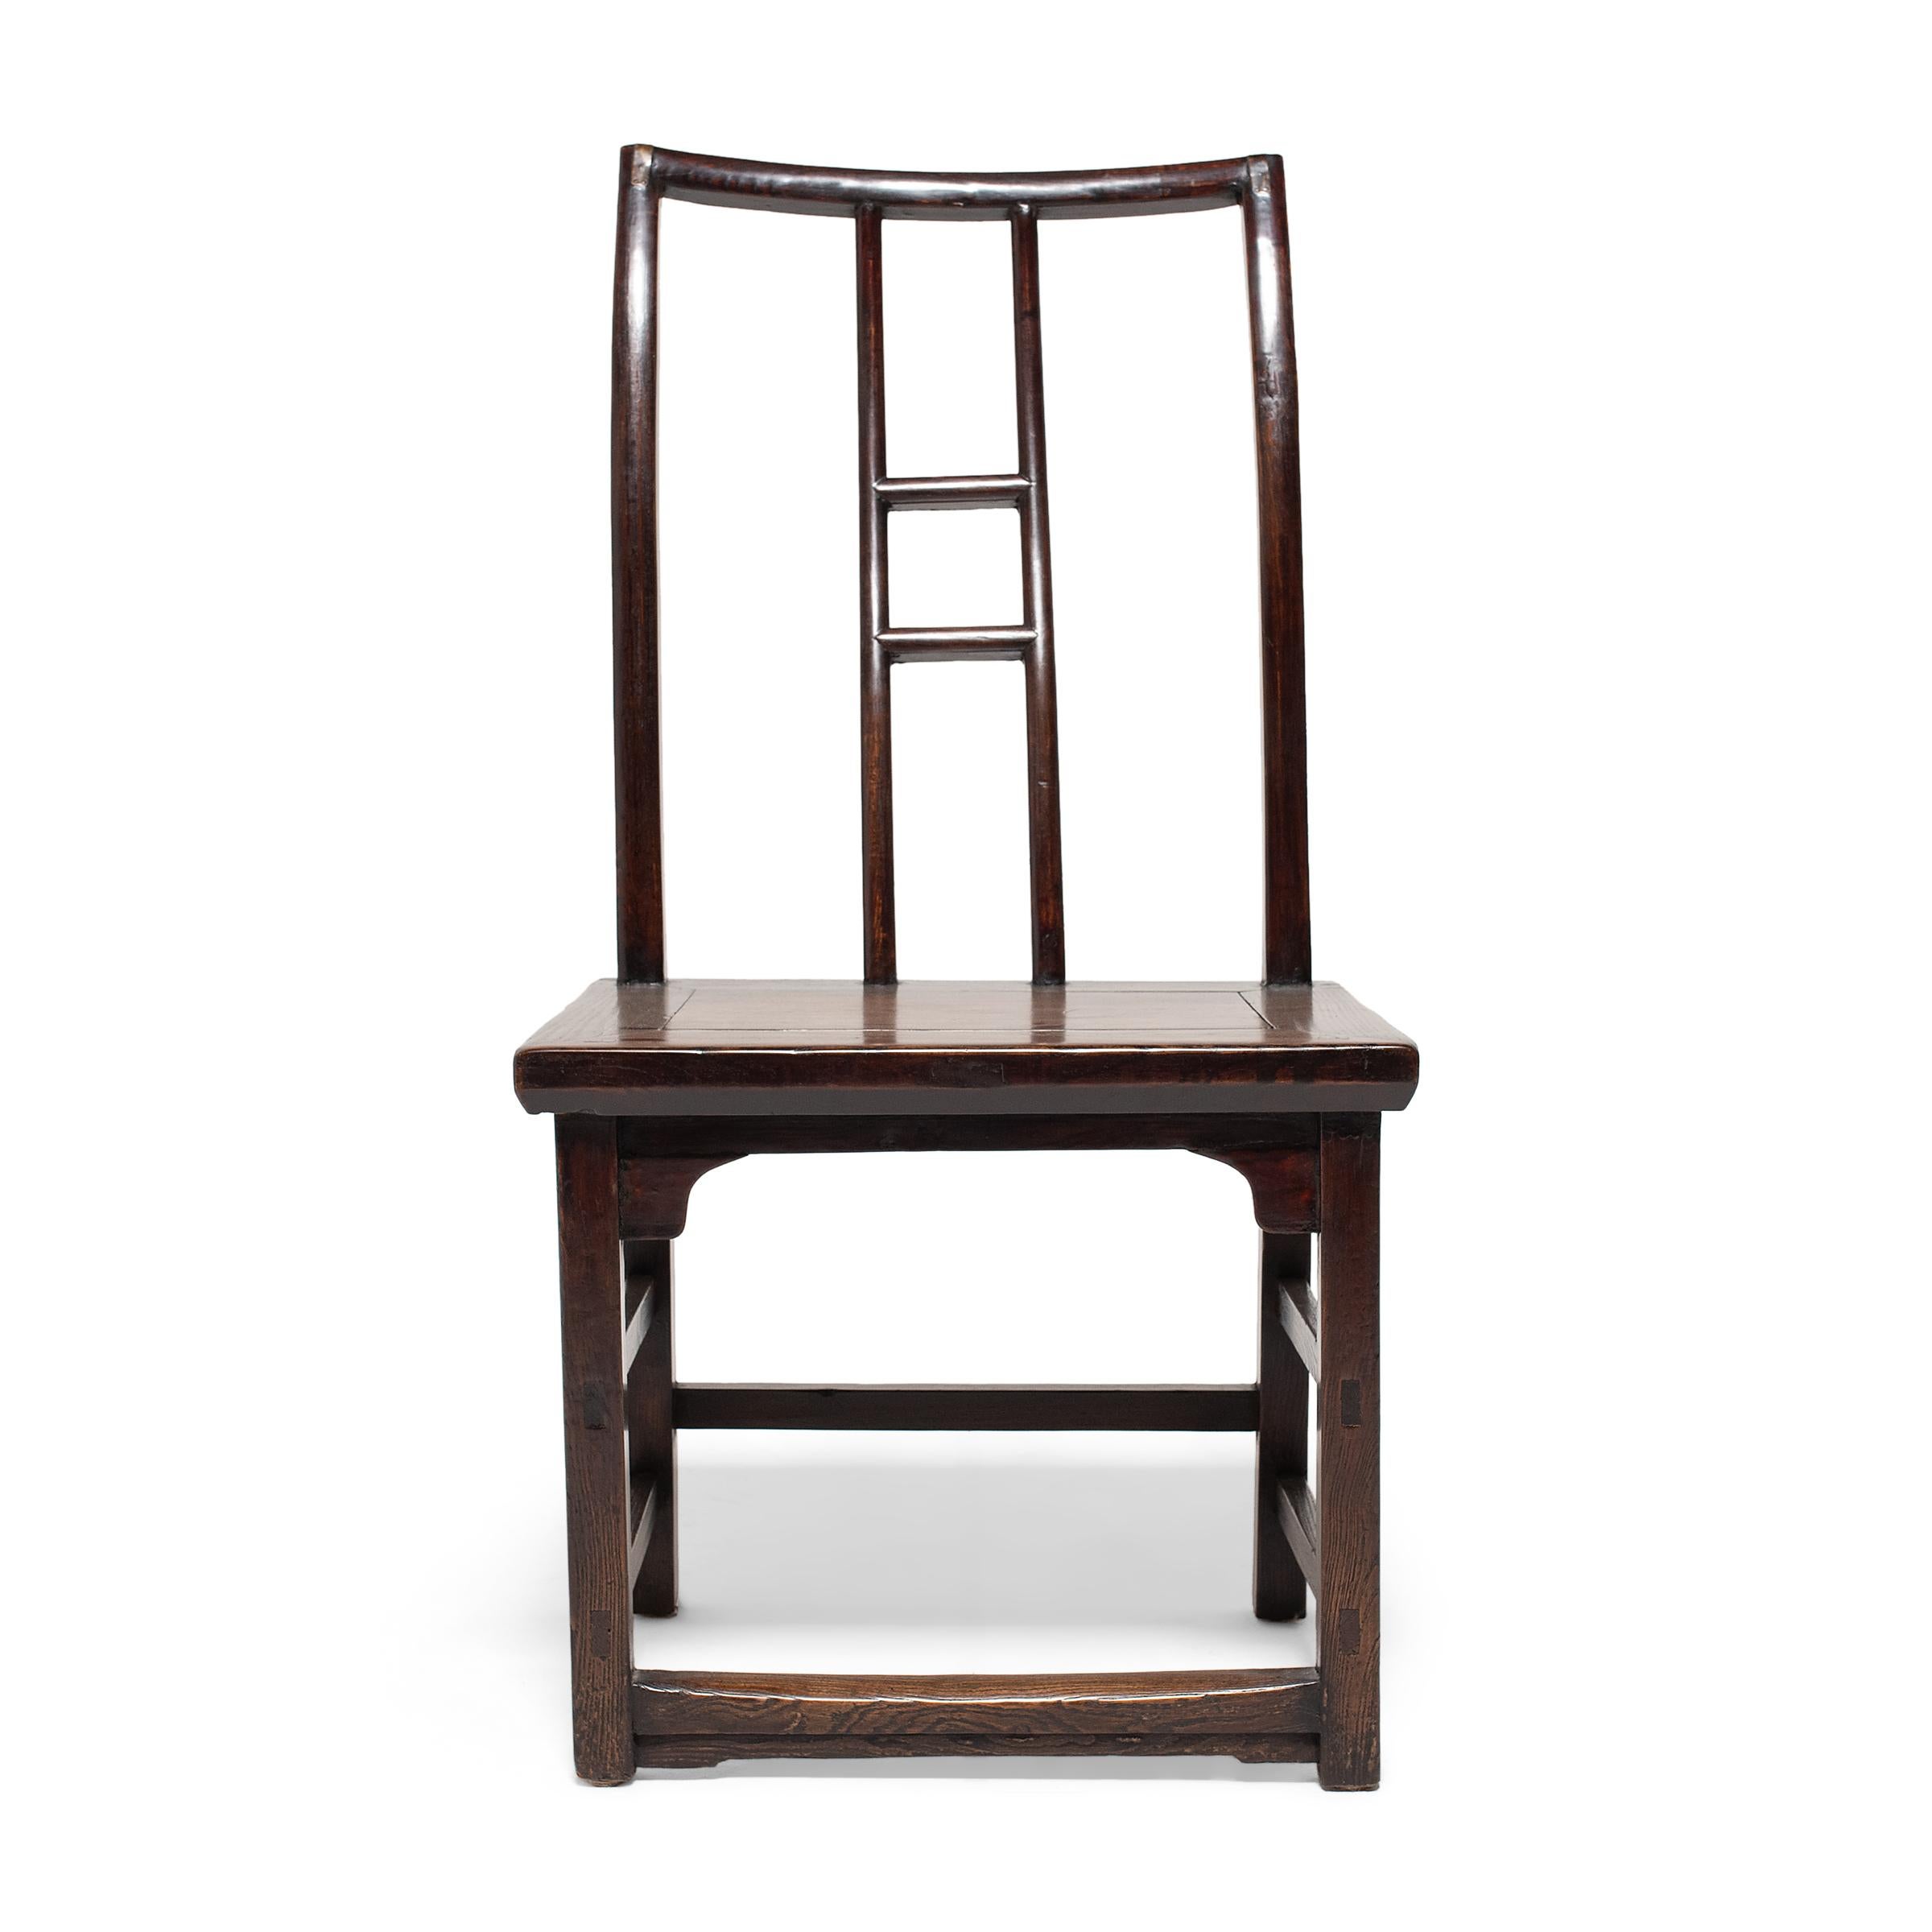 Avec leurs lignes pures et leurs proportions équilibrées, ces chaises à haut dossier du XIXe siècle illustrent les formes raffinées du design des meubles de la dynastie Ming. Les chaises sont conçues sur le modèle de la 